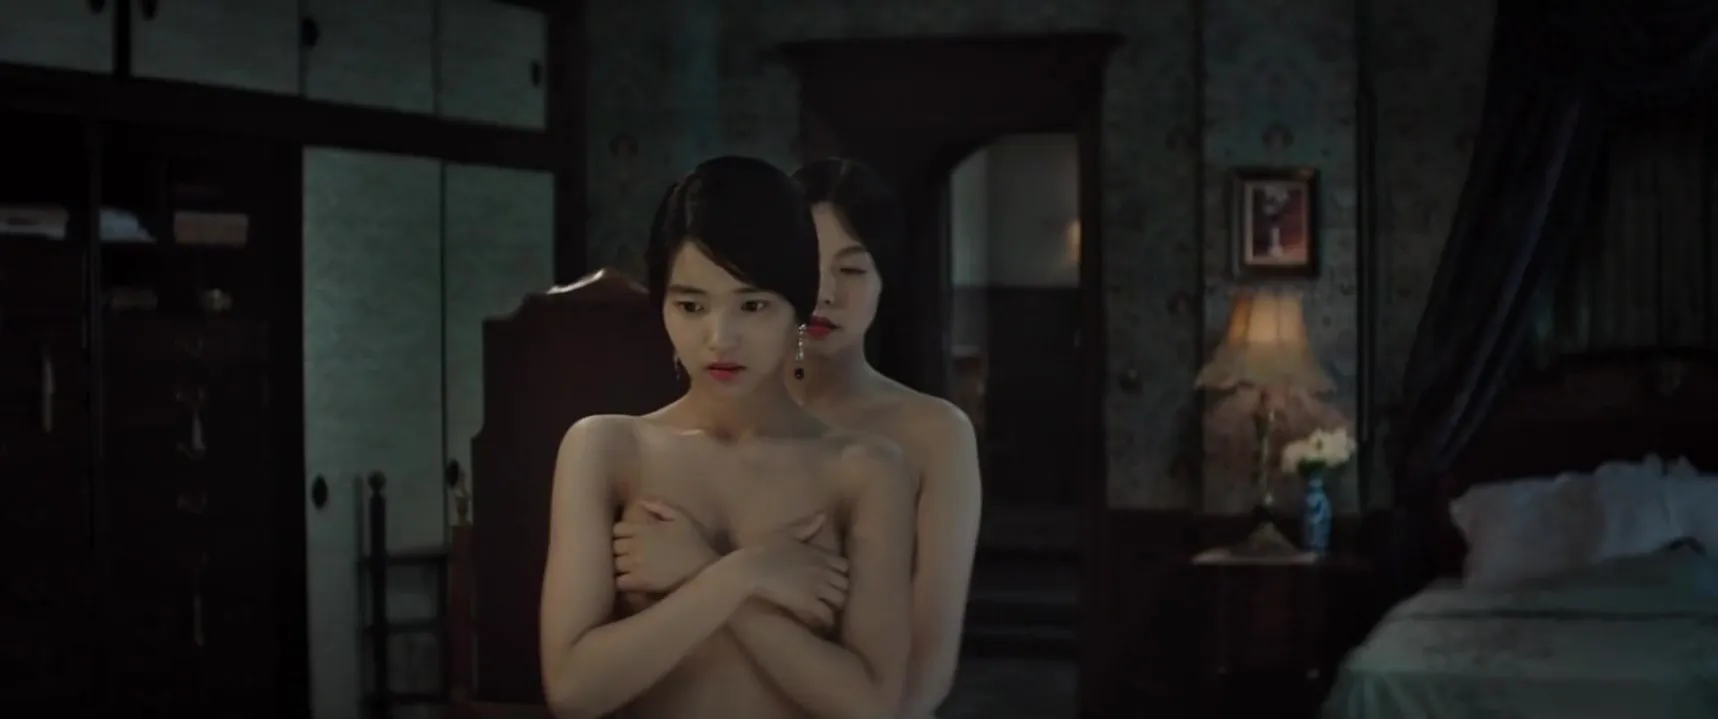 Hot Asian Sex Movies Bi - Beautiful asian teens having sensual lesbian sex. Amazing scene from hot  Korean movie